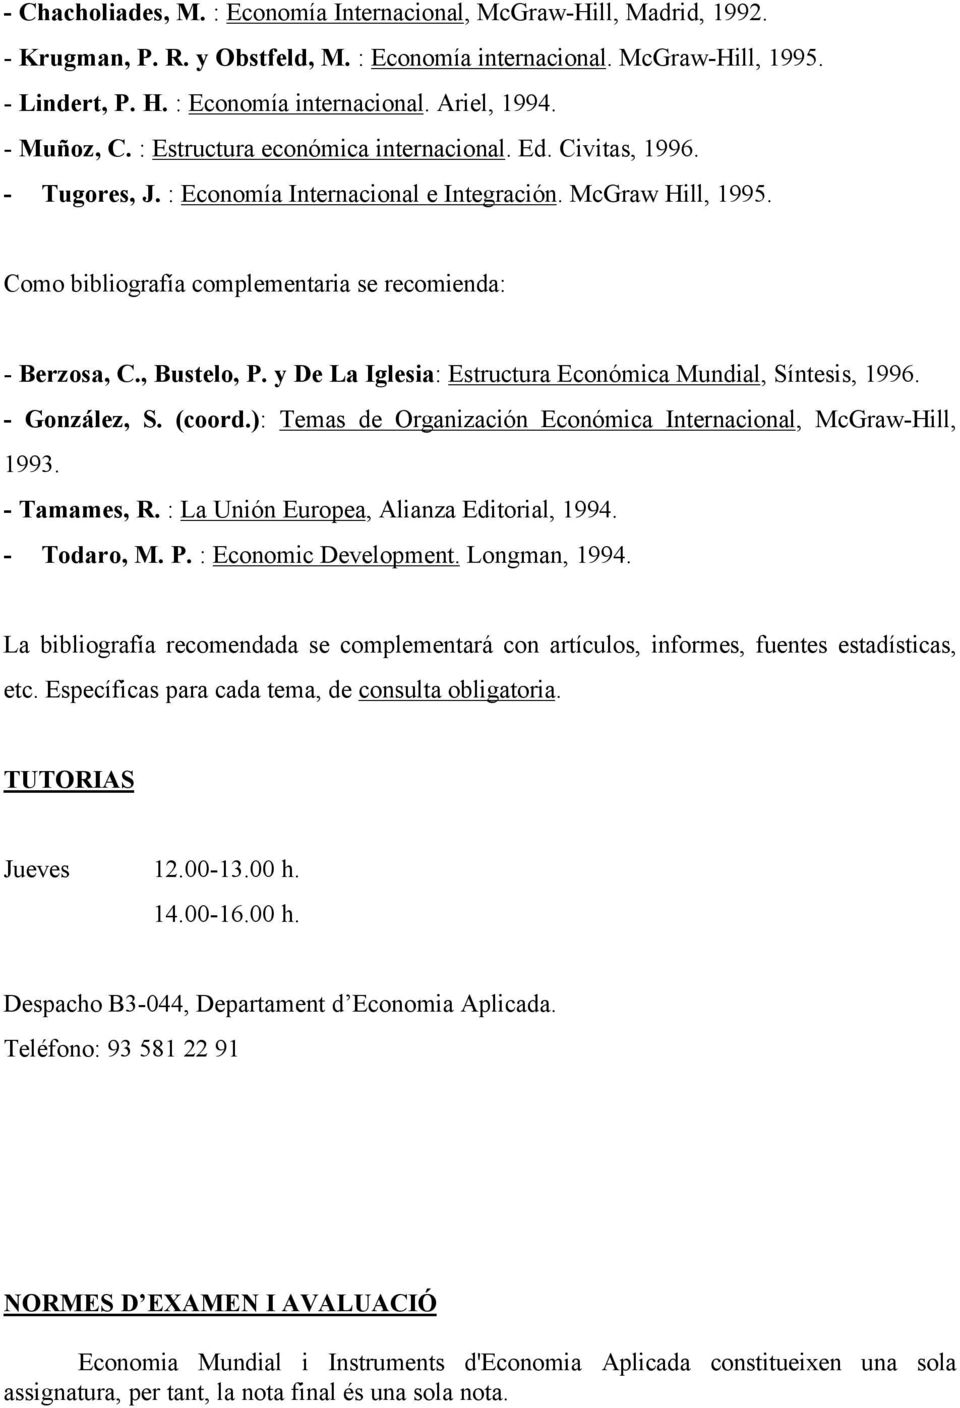 Como bibliografía complementaria se recomienda: - Berzosa, C., Bustelo, P. y De La Iglesia: Estructura Económica Mundial, Síntesis, 1996. - González, S. (coord.